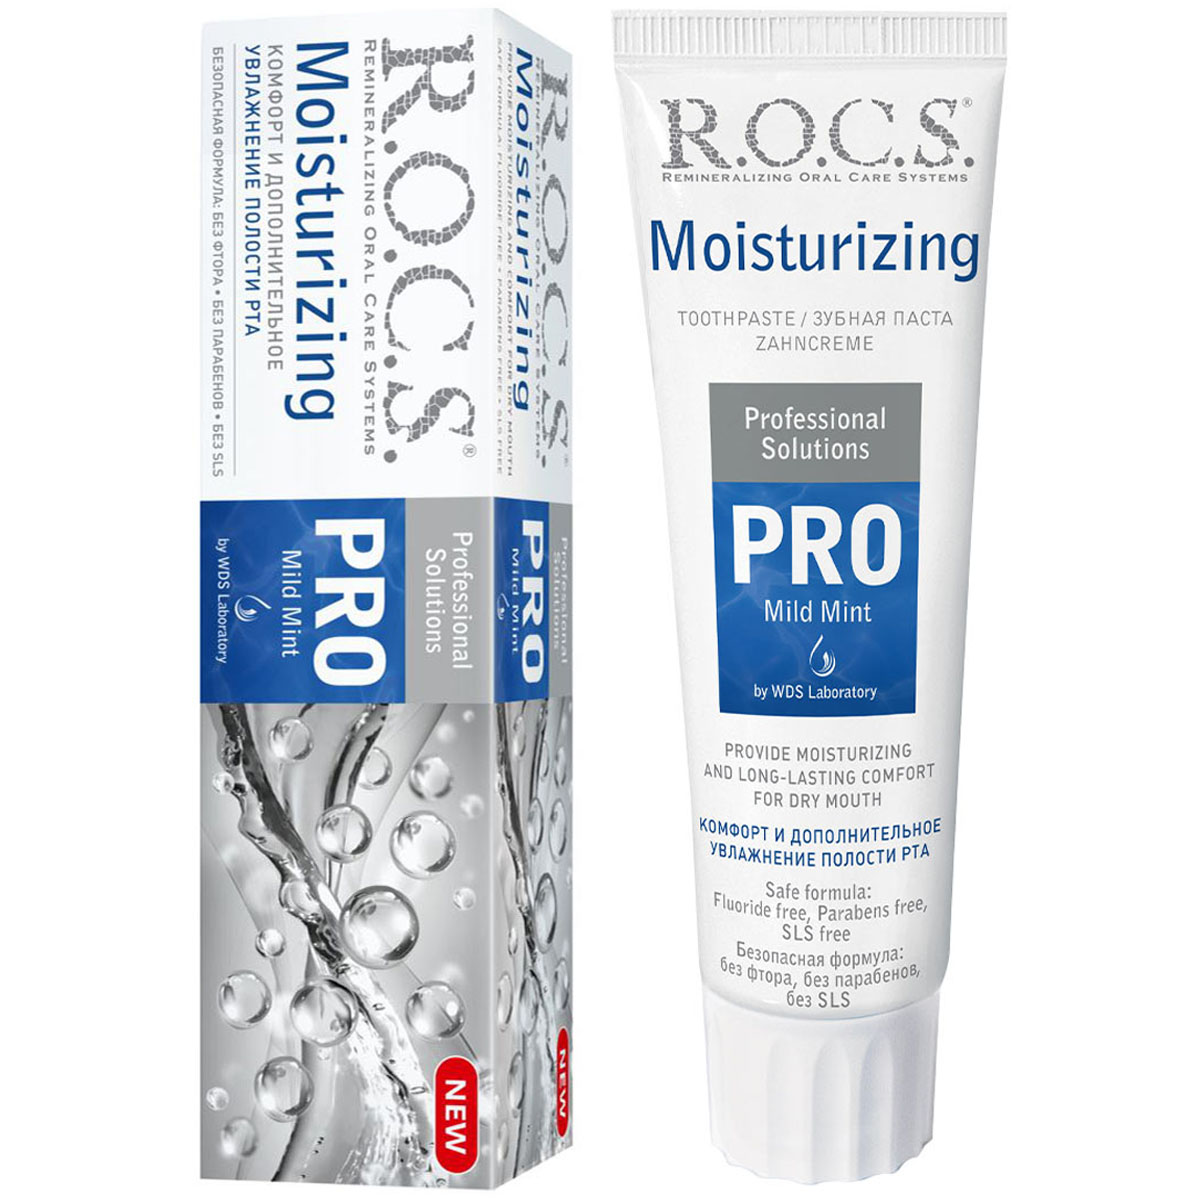 Зубная паста ROCS зубная паста r o c s pro moisturizing увлажняющая 74г